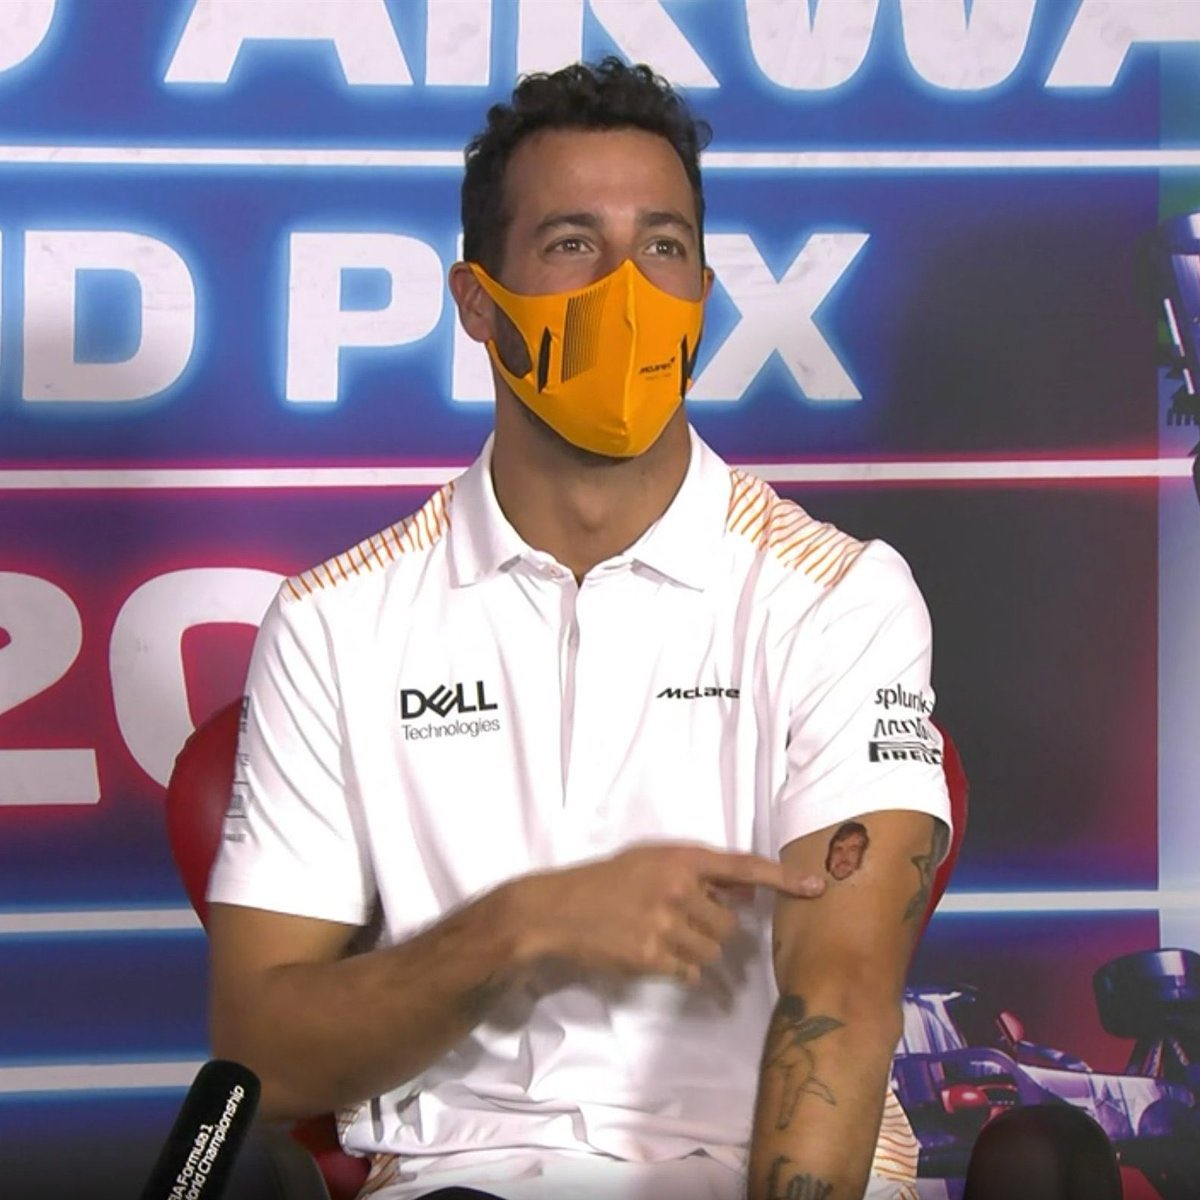 David Sánchez de Castro on X: "JAJAJAJAJA Daniel Ricciardo, el piloto con más sentido del espectáculo del paddock DE LARGO" / X